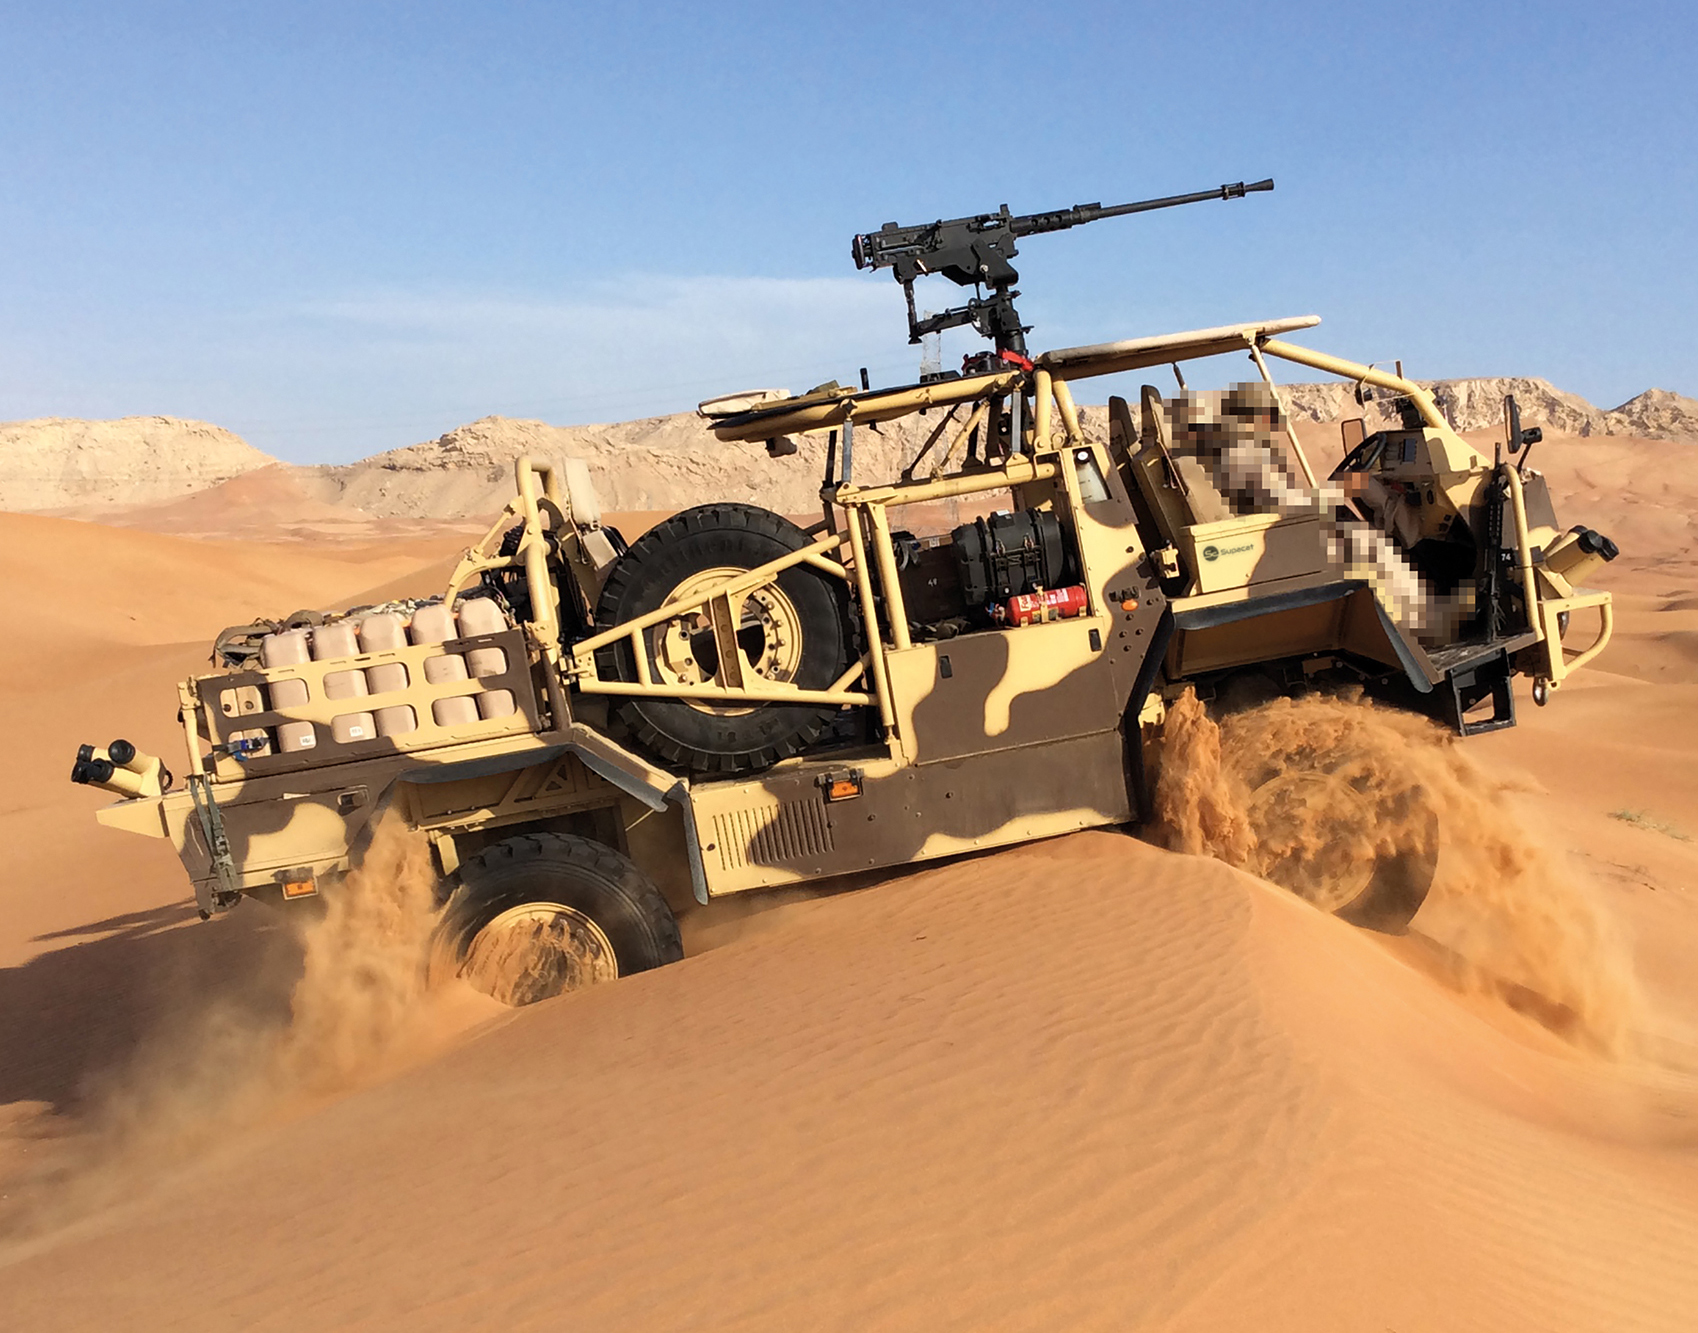 Автомобиль для специальных операций в пустыне HMT 400 Desert